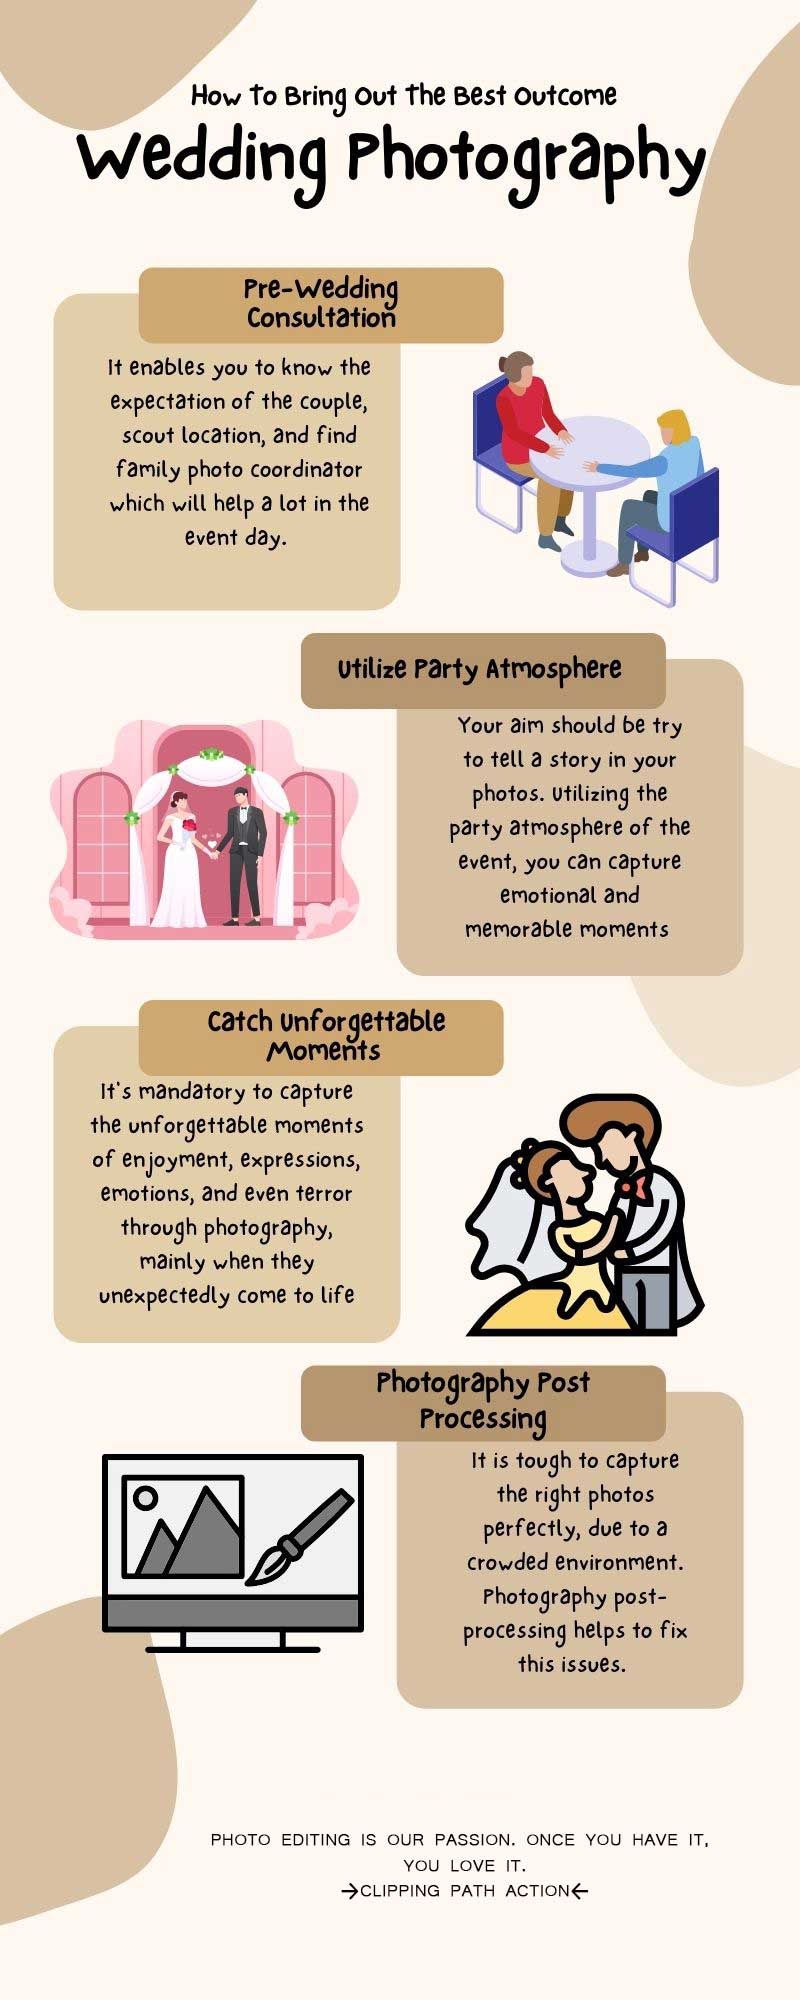 Wedding Photography tips